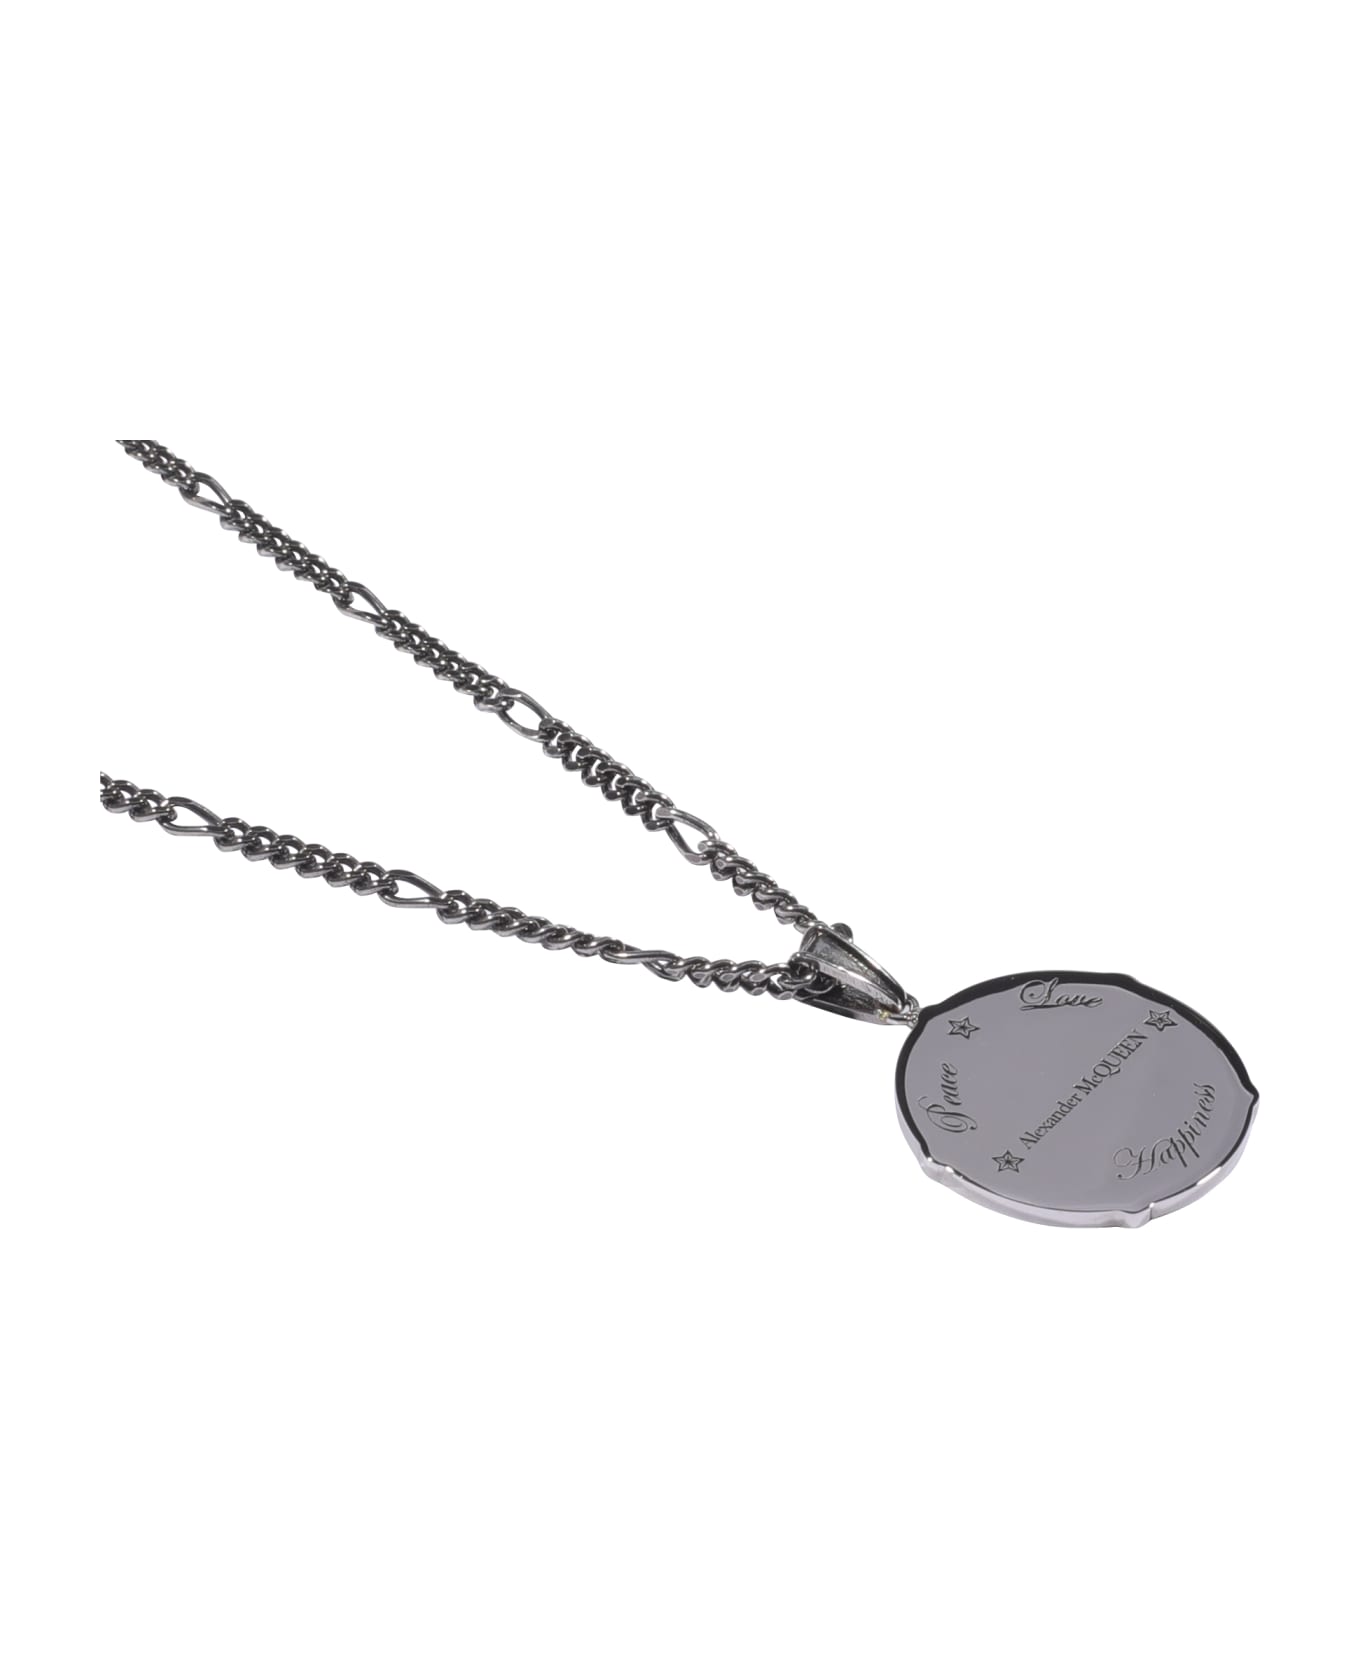 Alexander McQueen Medallion Pendant Necklace - Silver